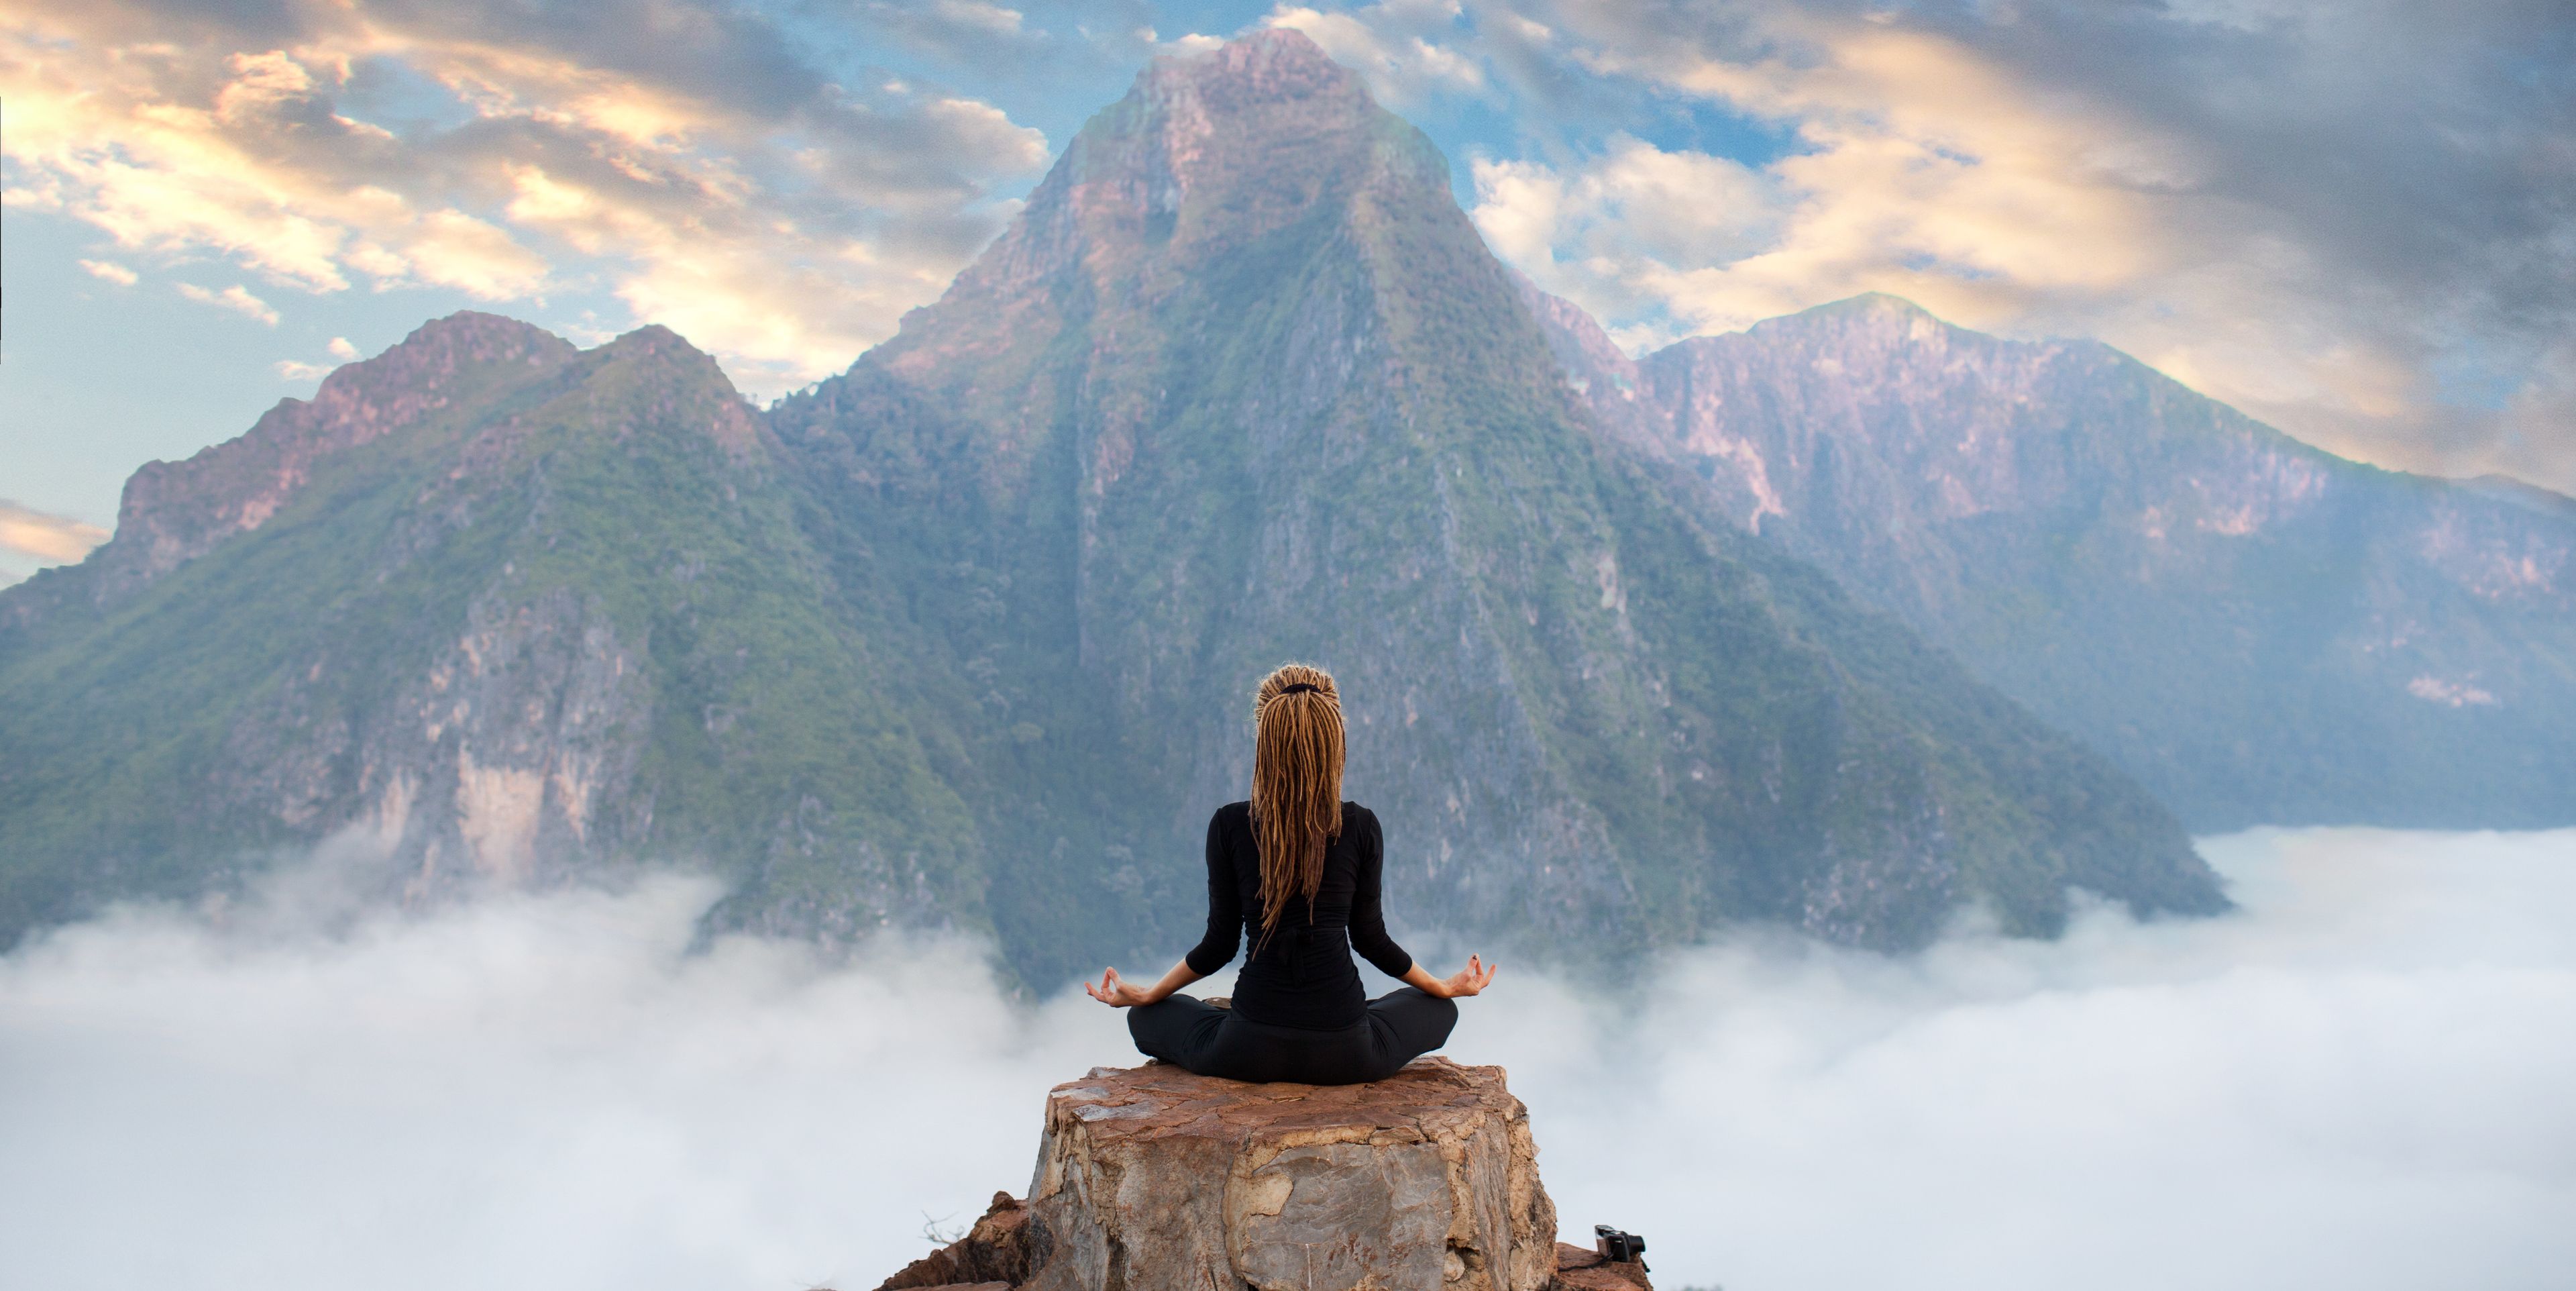 Frau im Lotussitz auf einer Bergspitze im Hintergrund eine beeindruckende Berglandschaft